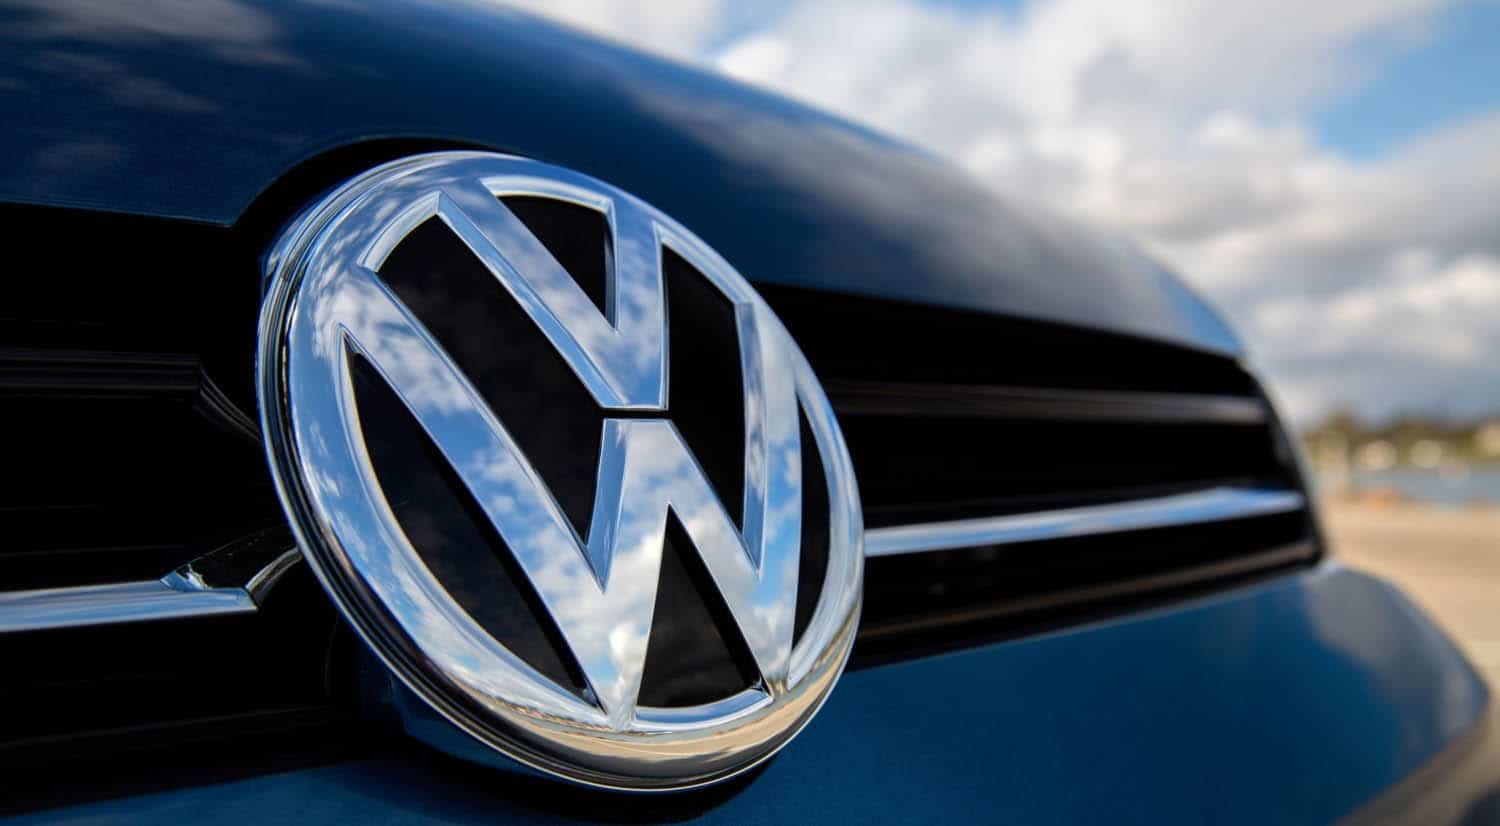 Volkswagen conoce hoy su imputación por el caso del fraude de motores